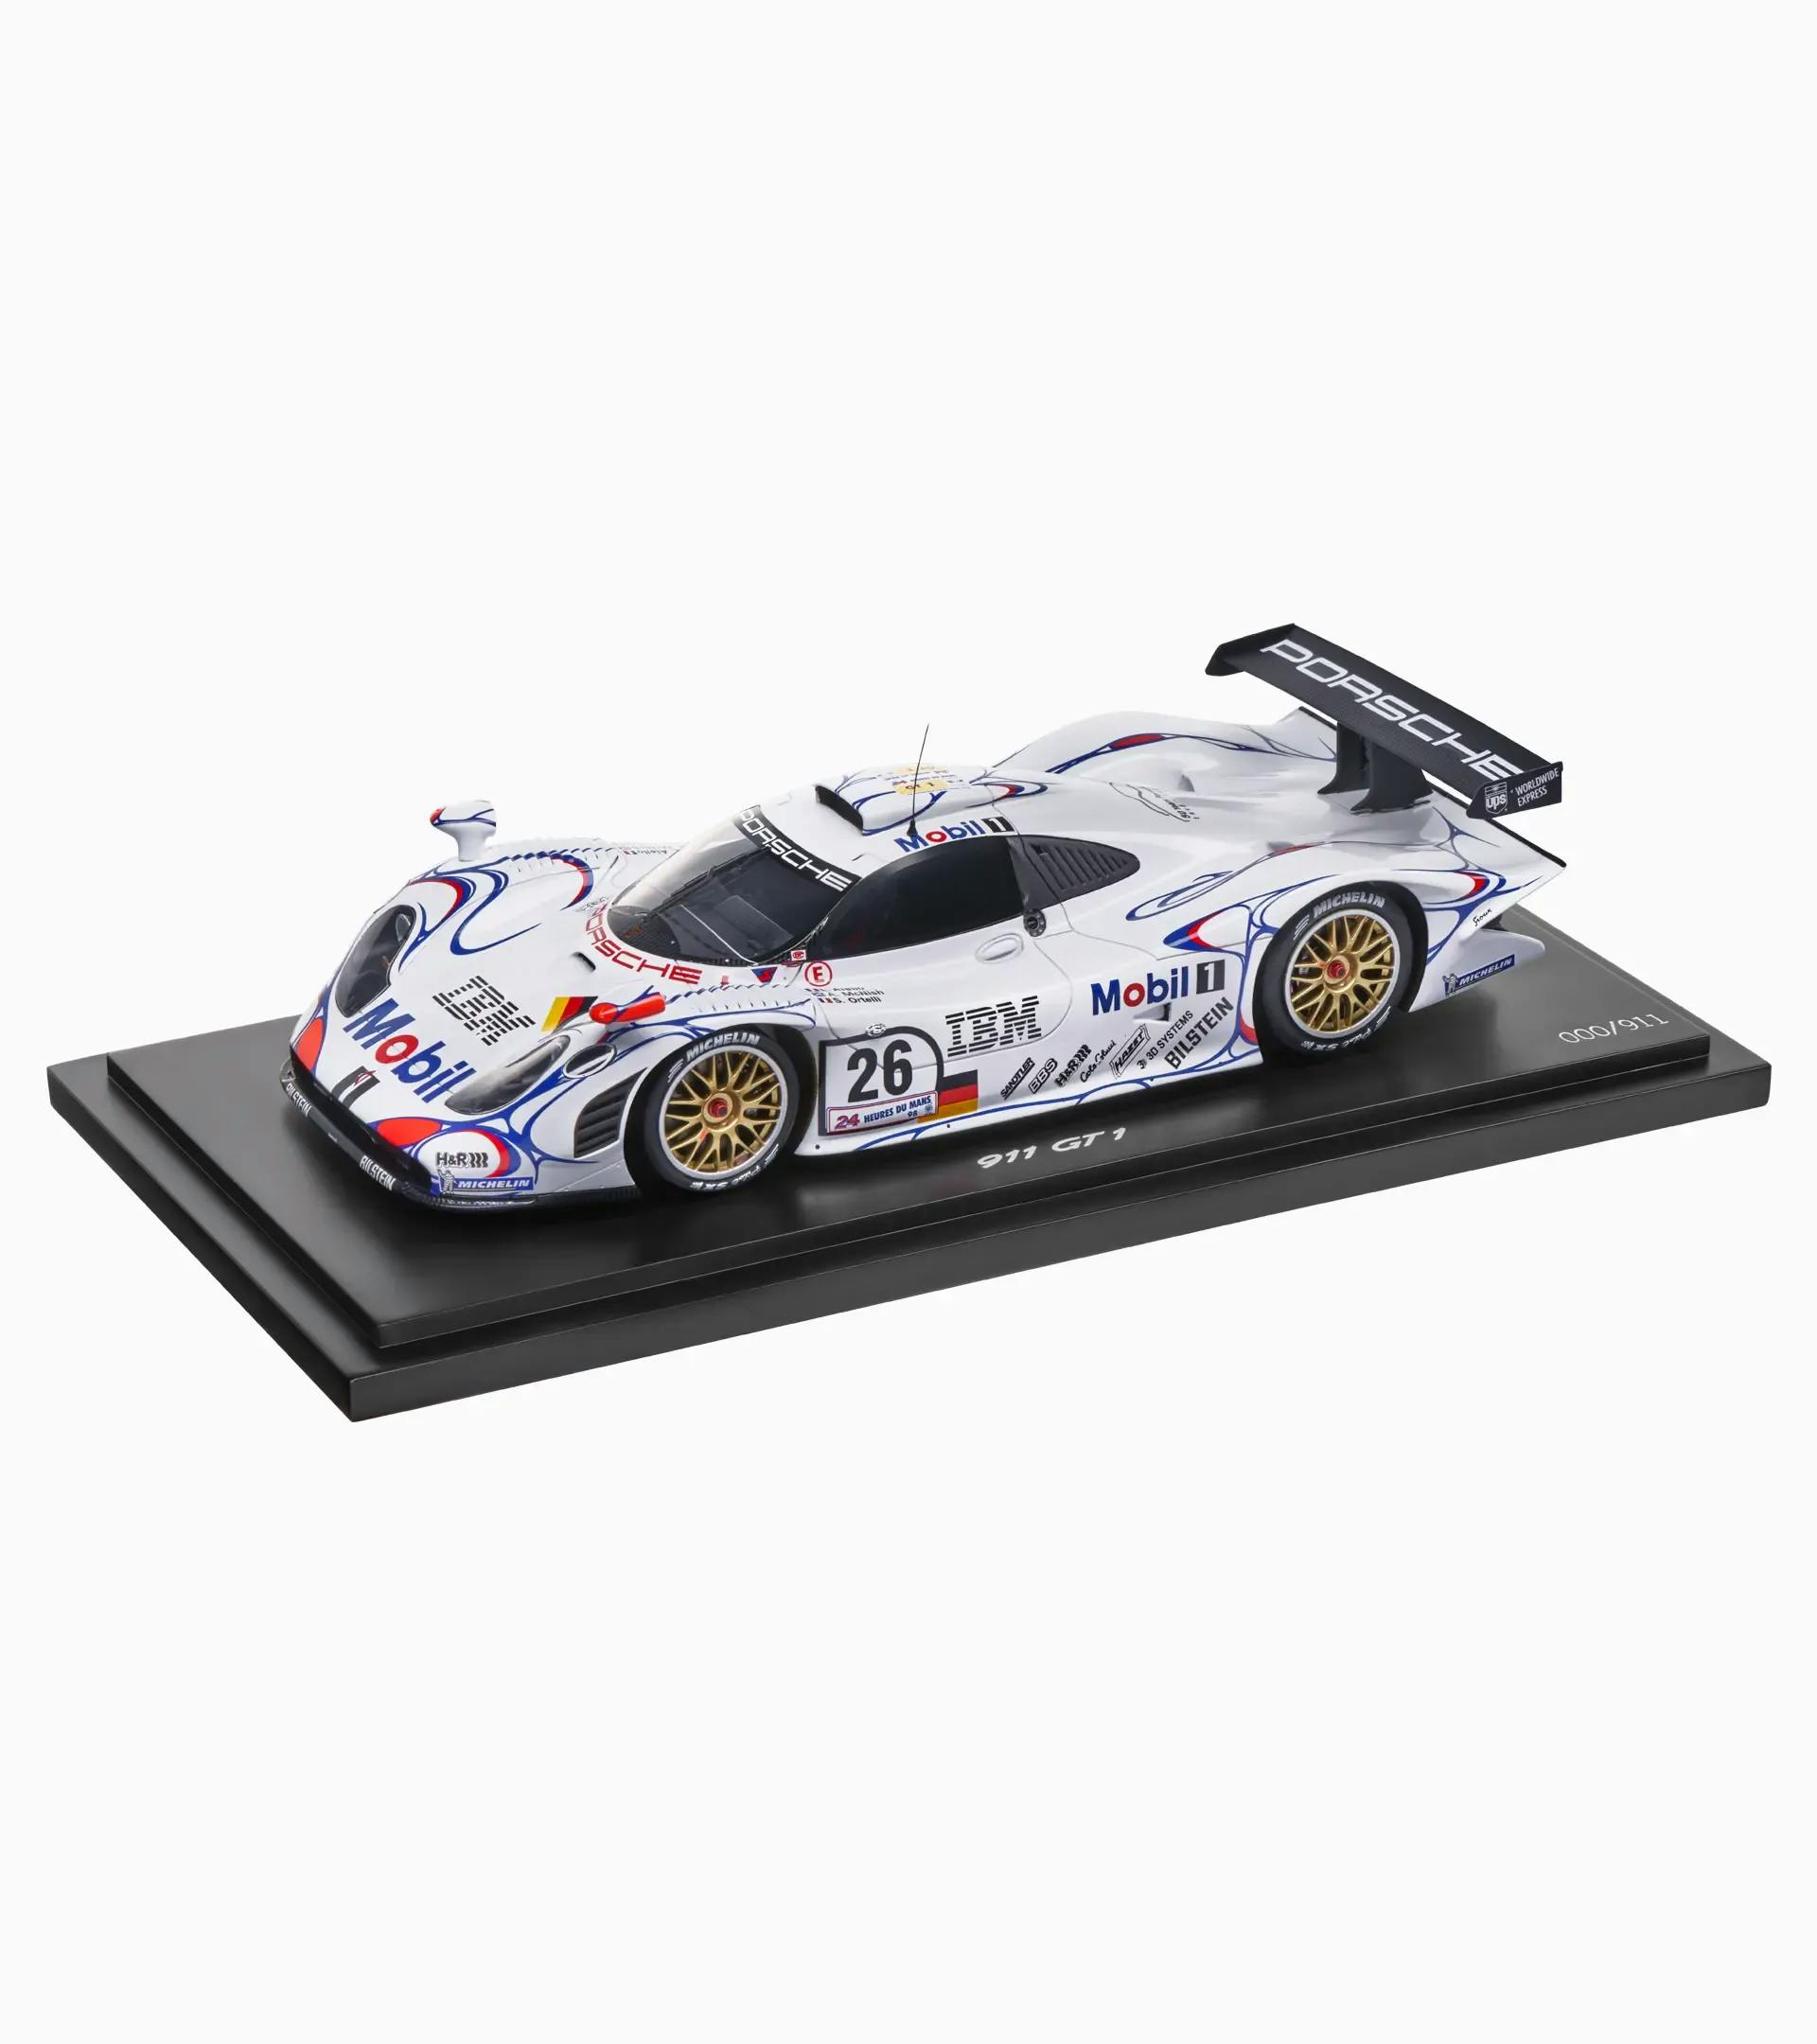 Porsche 911 GT1’98 victorieuse aux 24 Heures du Mans 1998 – Édition limitée